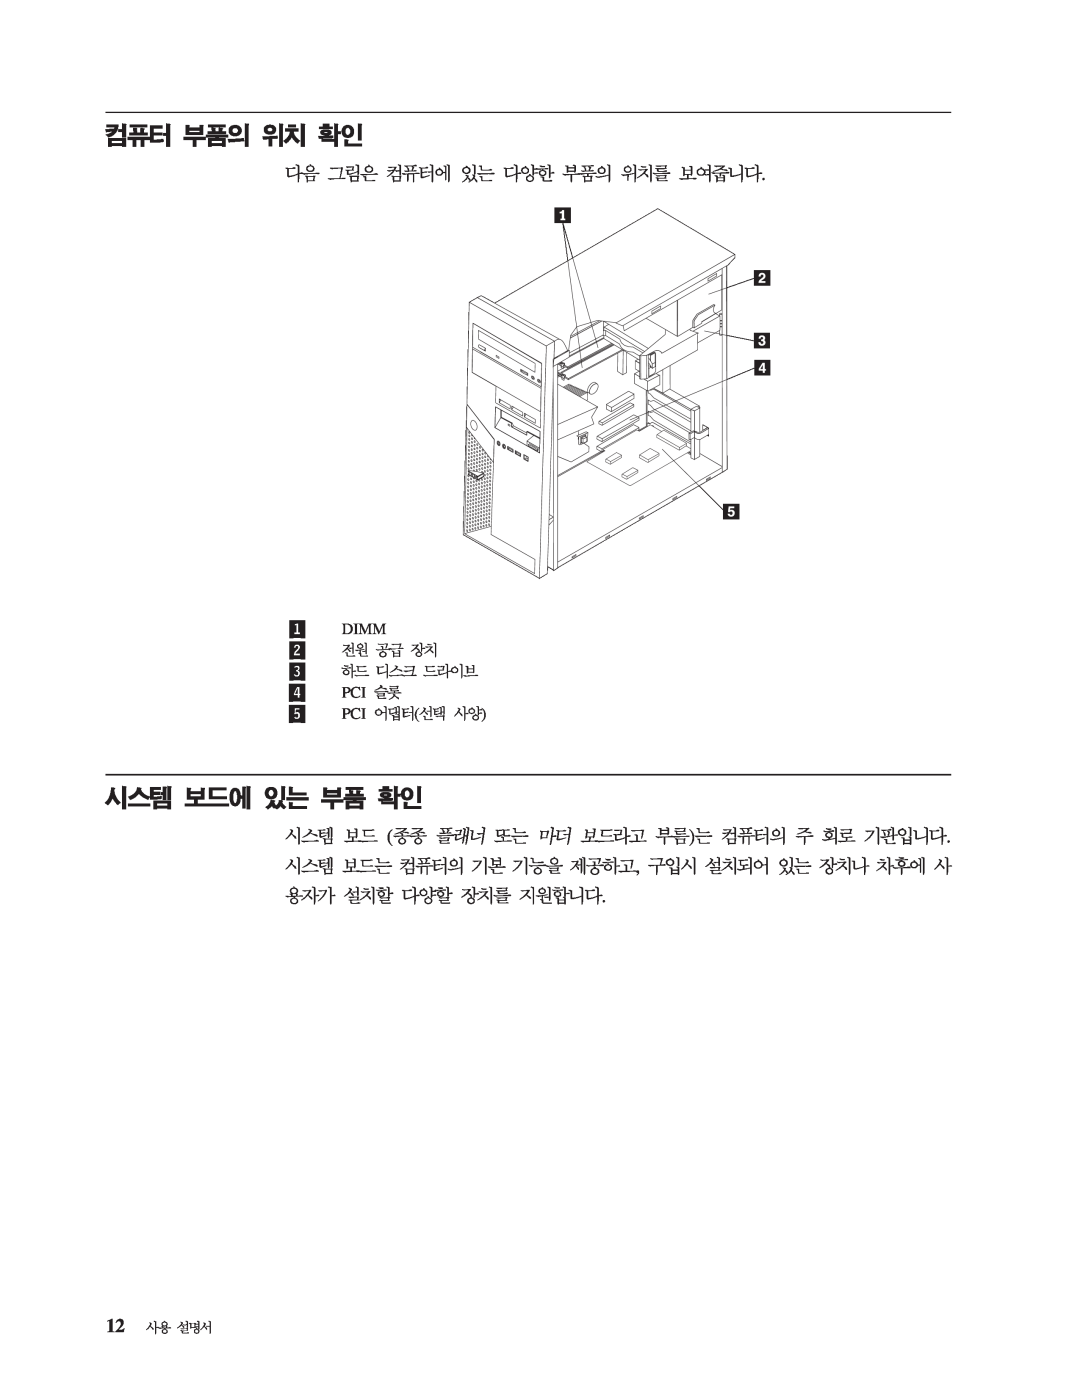 IBM 8143 manual Dimm 